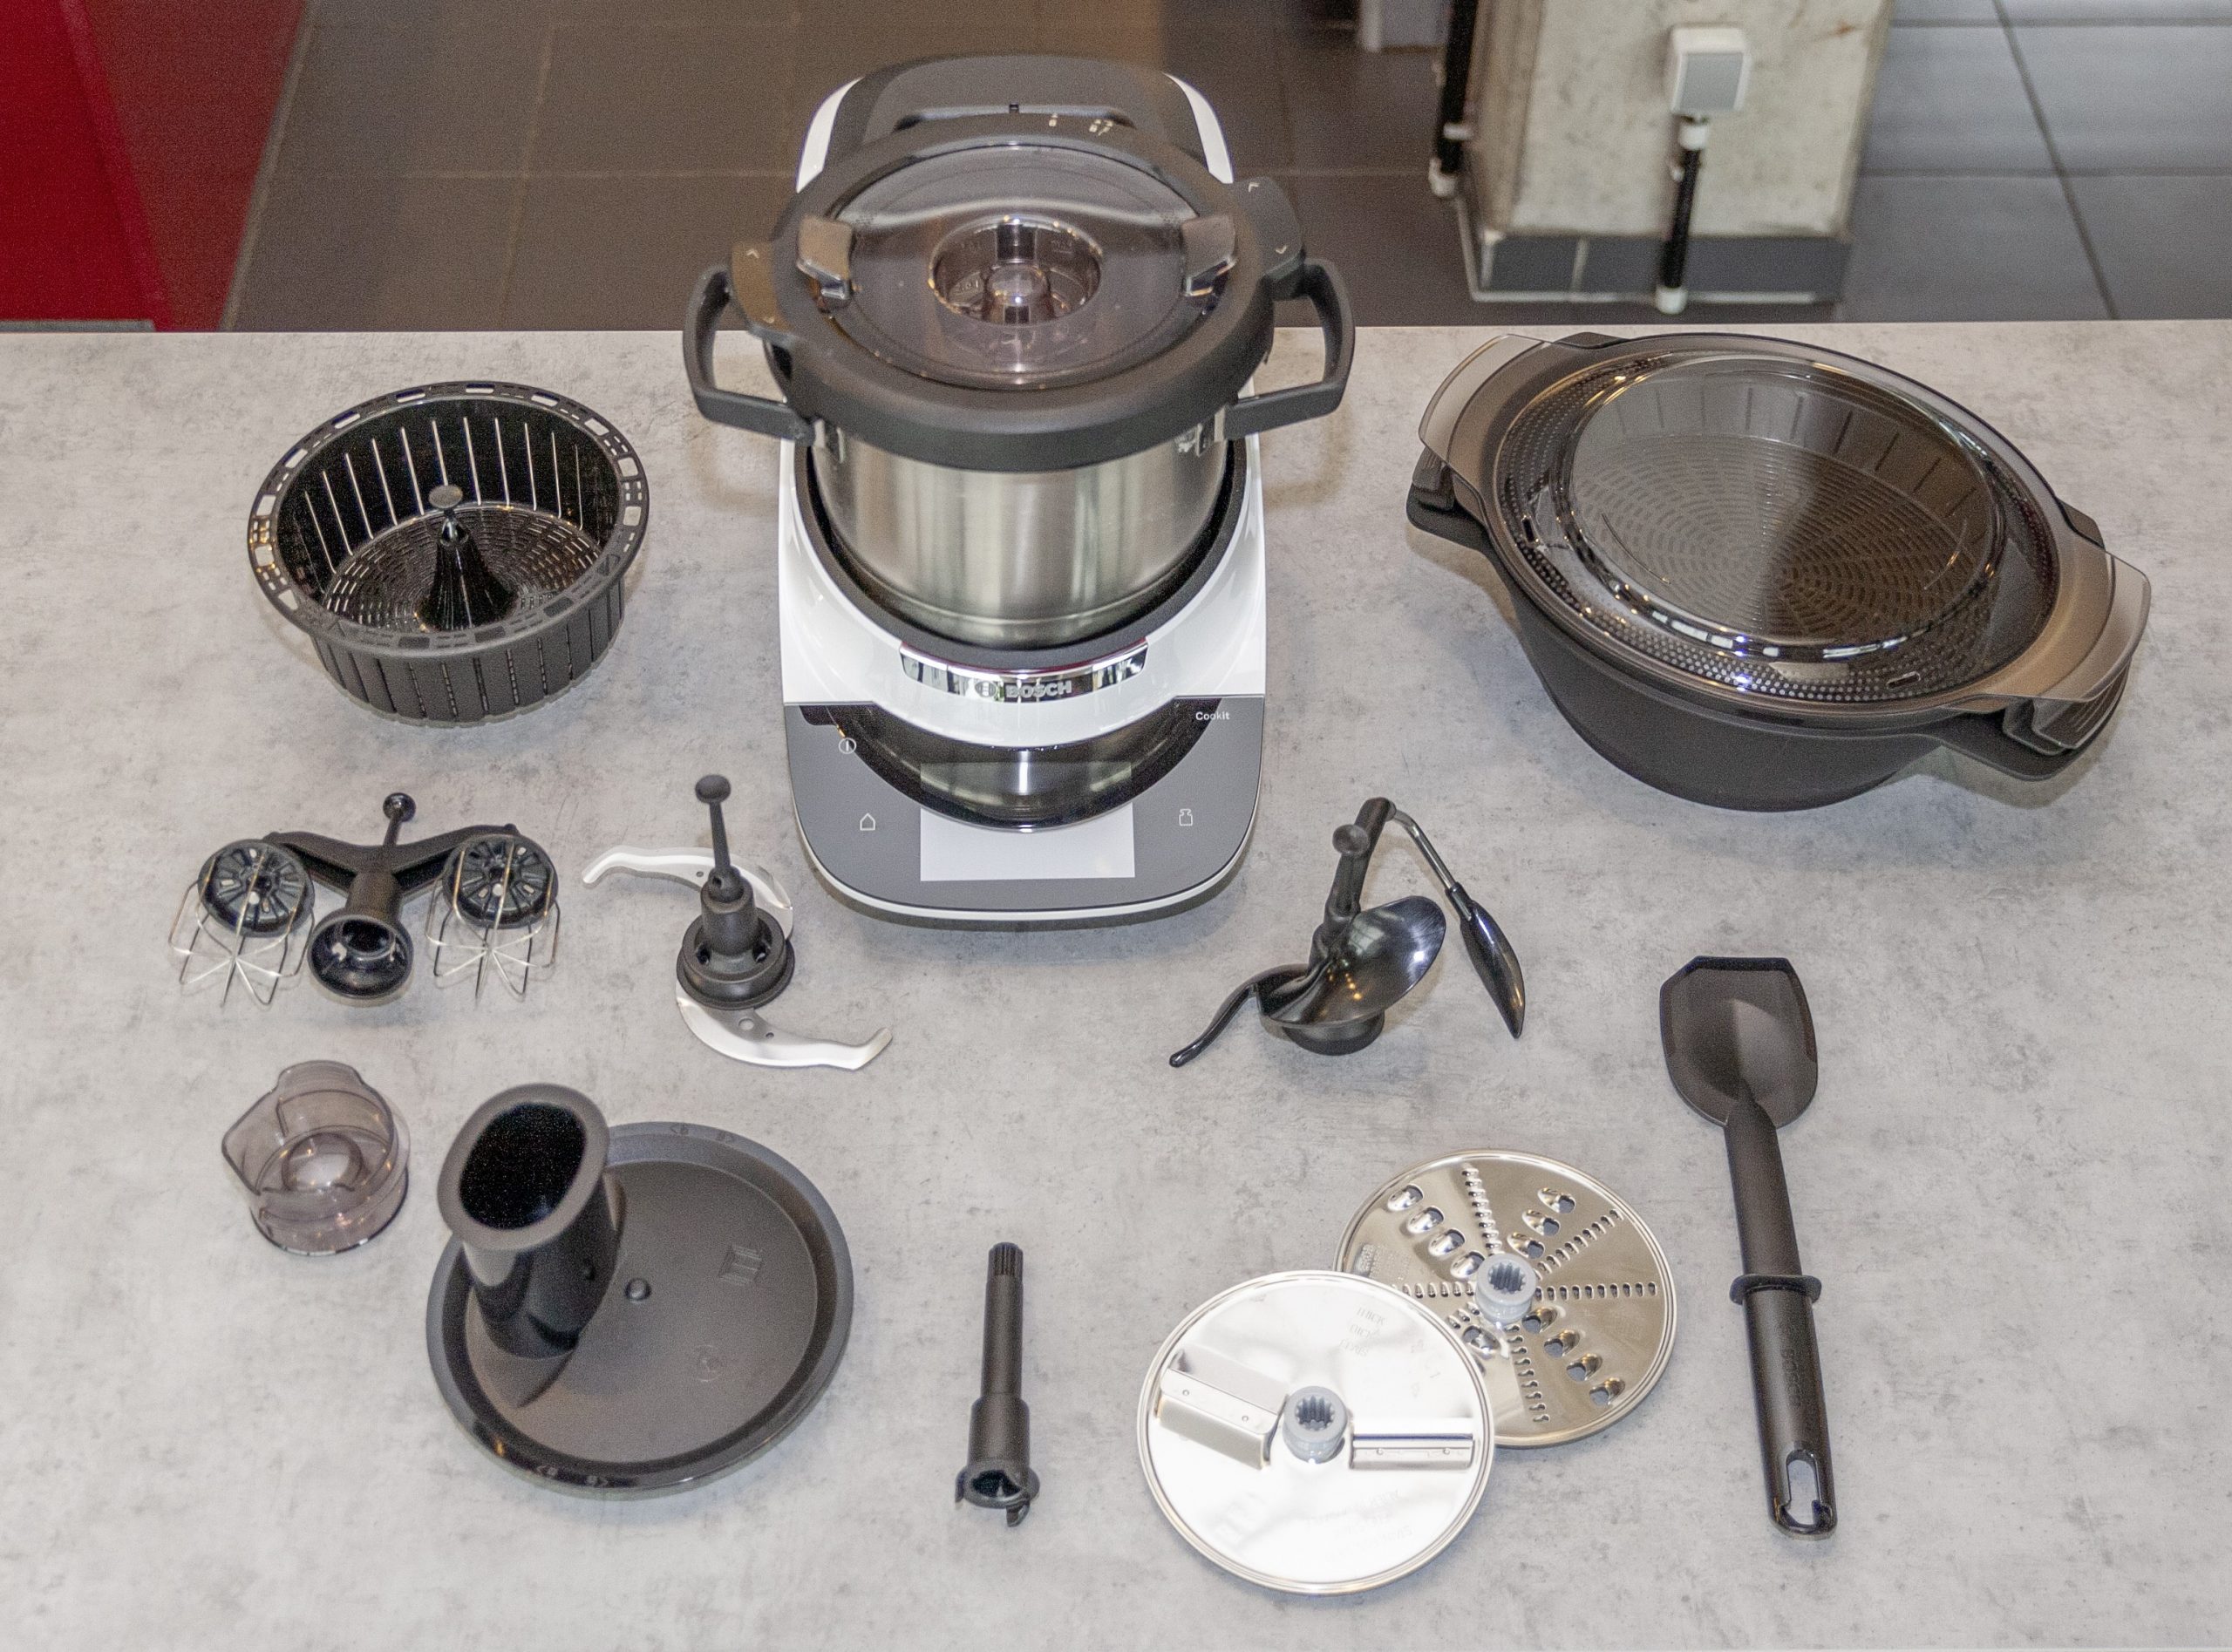 Der Cookit von Bosch, Küchenmaschine mit viel Zubehör